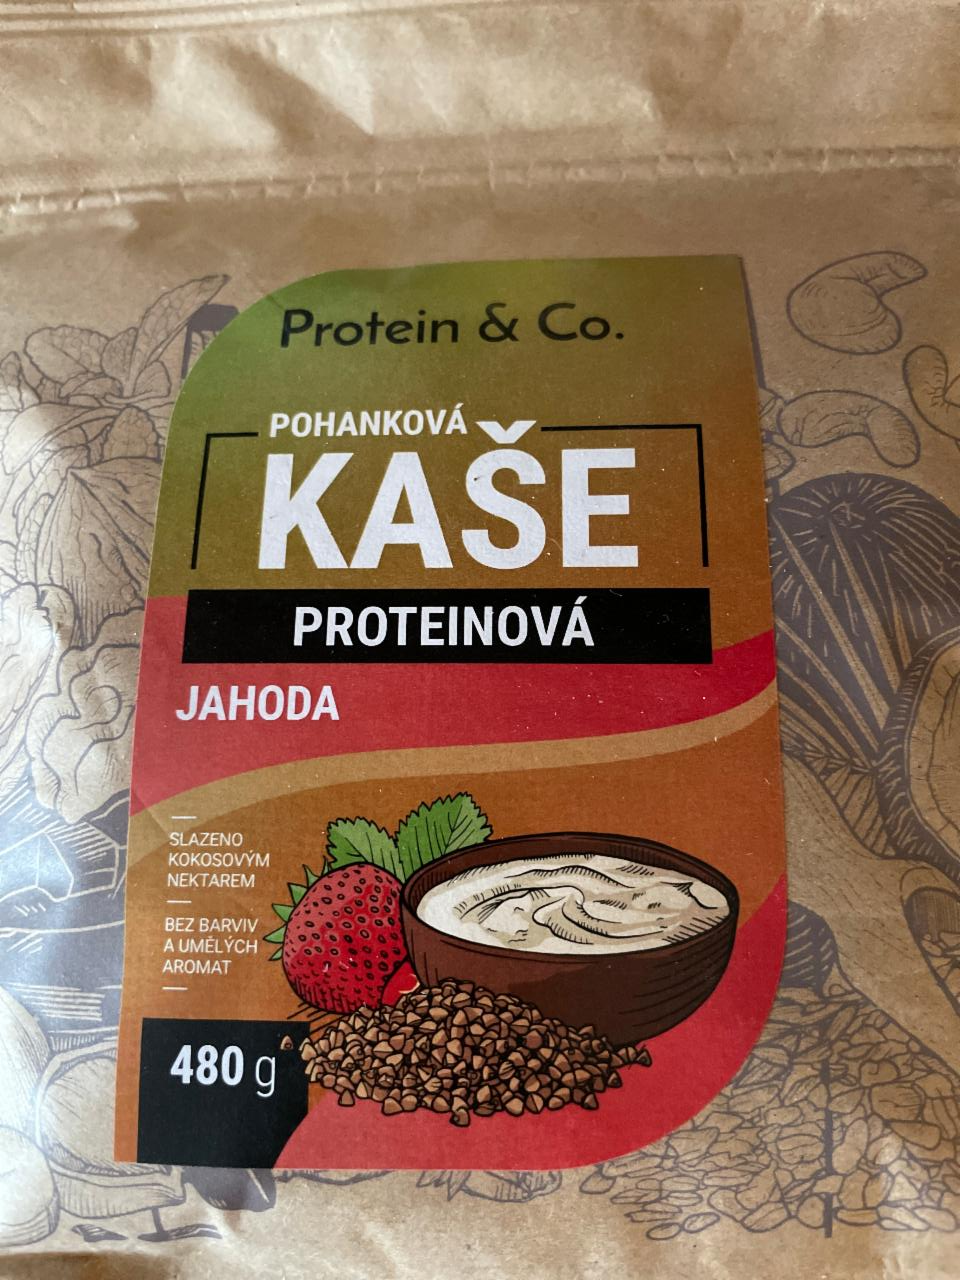 Fotografie - Pohanková kaše proteinová jahoda Protein & Co.